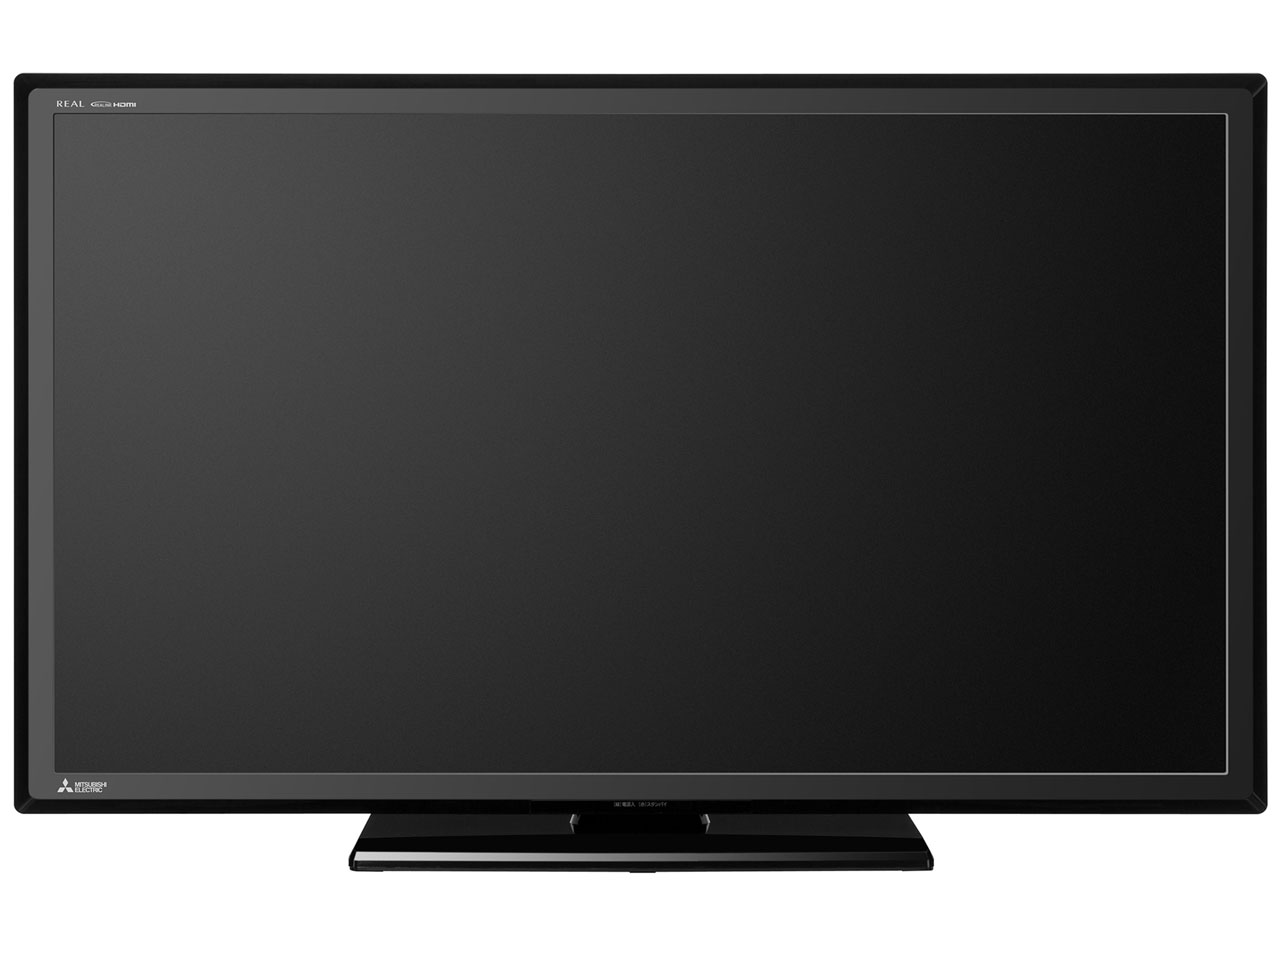 壁掛け金具対応検索 三菱 40インチ液晶テレビサイズ一覧 テレビアクセサリー市場